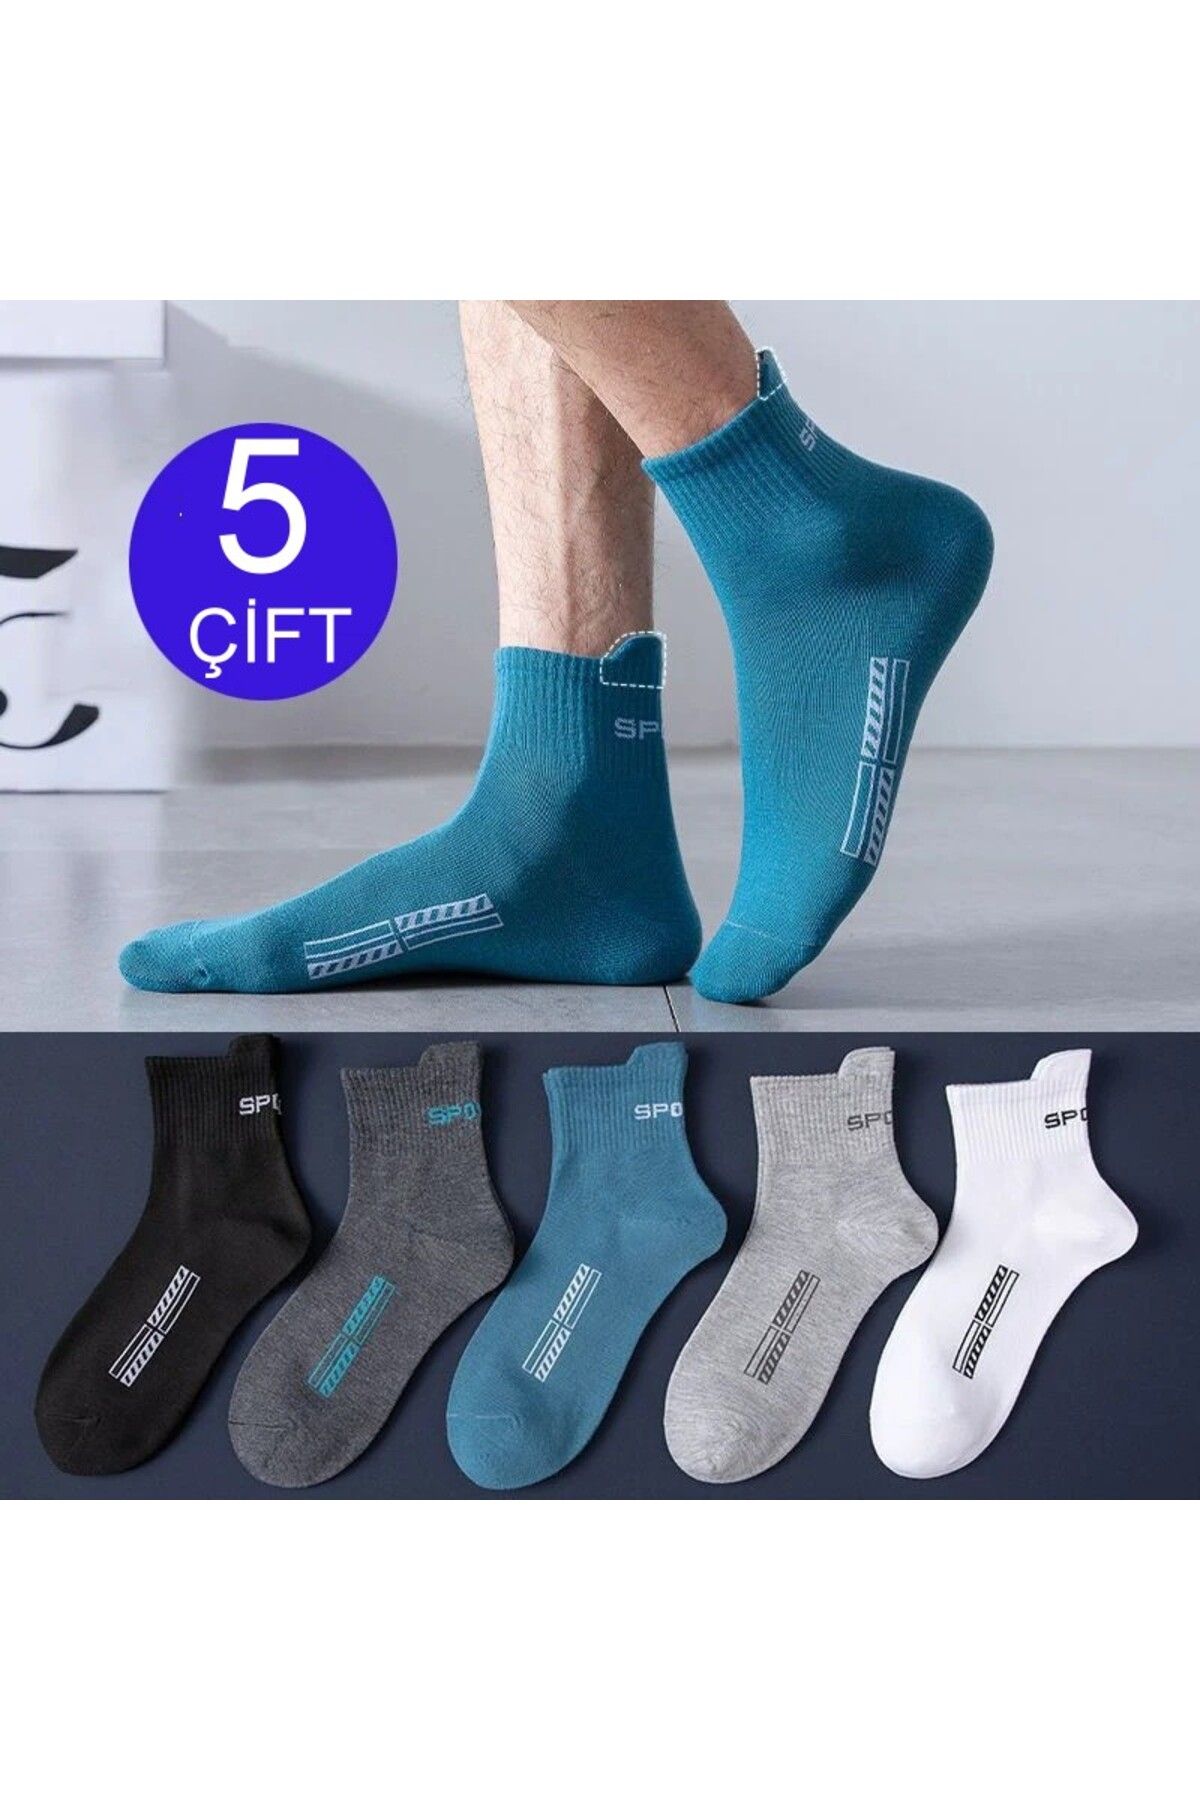 çorapmanya 5 Çift Erkek Yüksek Kalite Dikişsiz Burun Pamuk Yarım Konç Spor Çorap